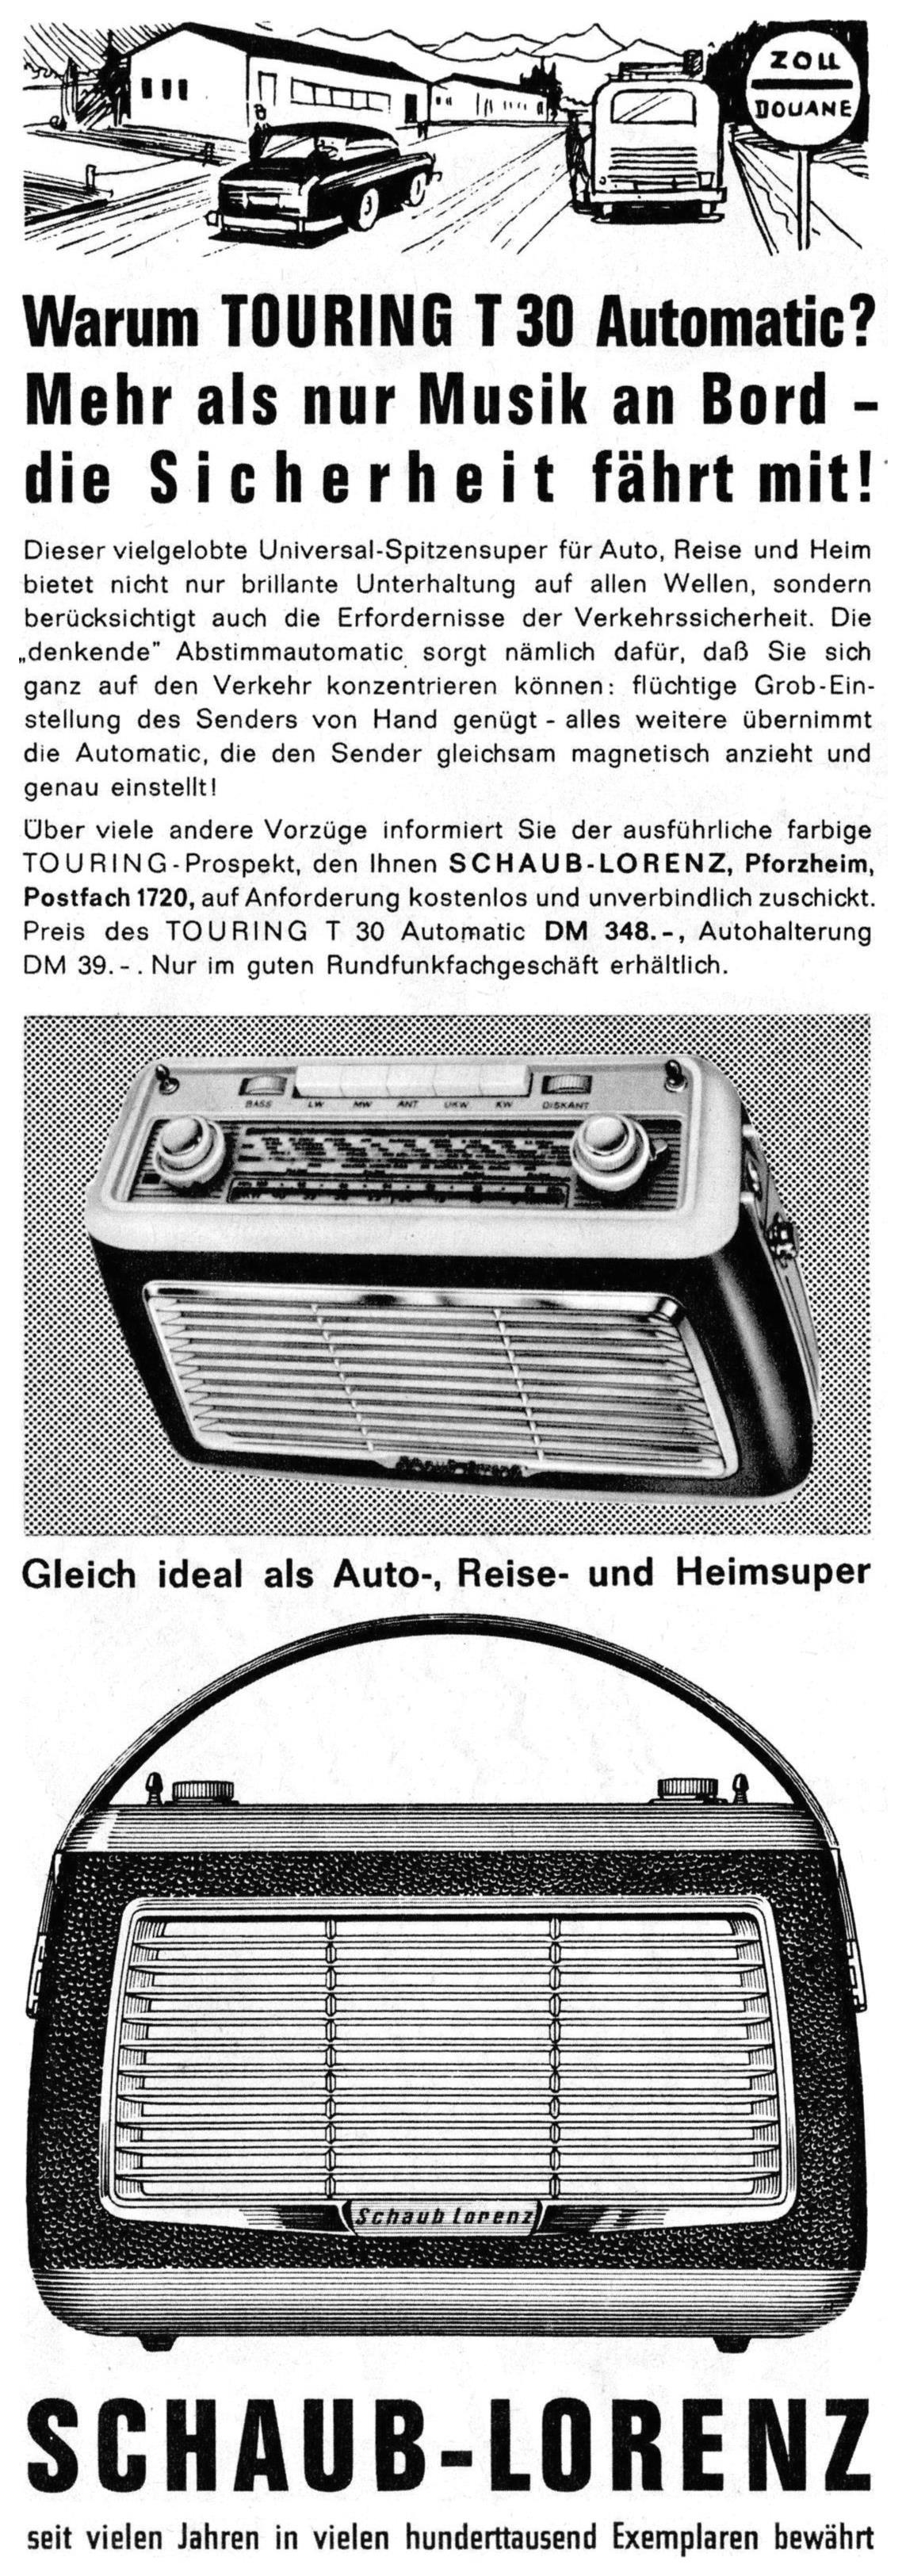 Schaub-Lorenz 1962 01.jpg